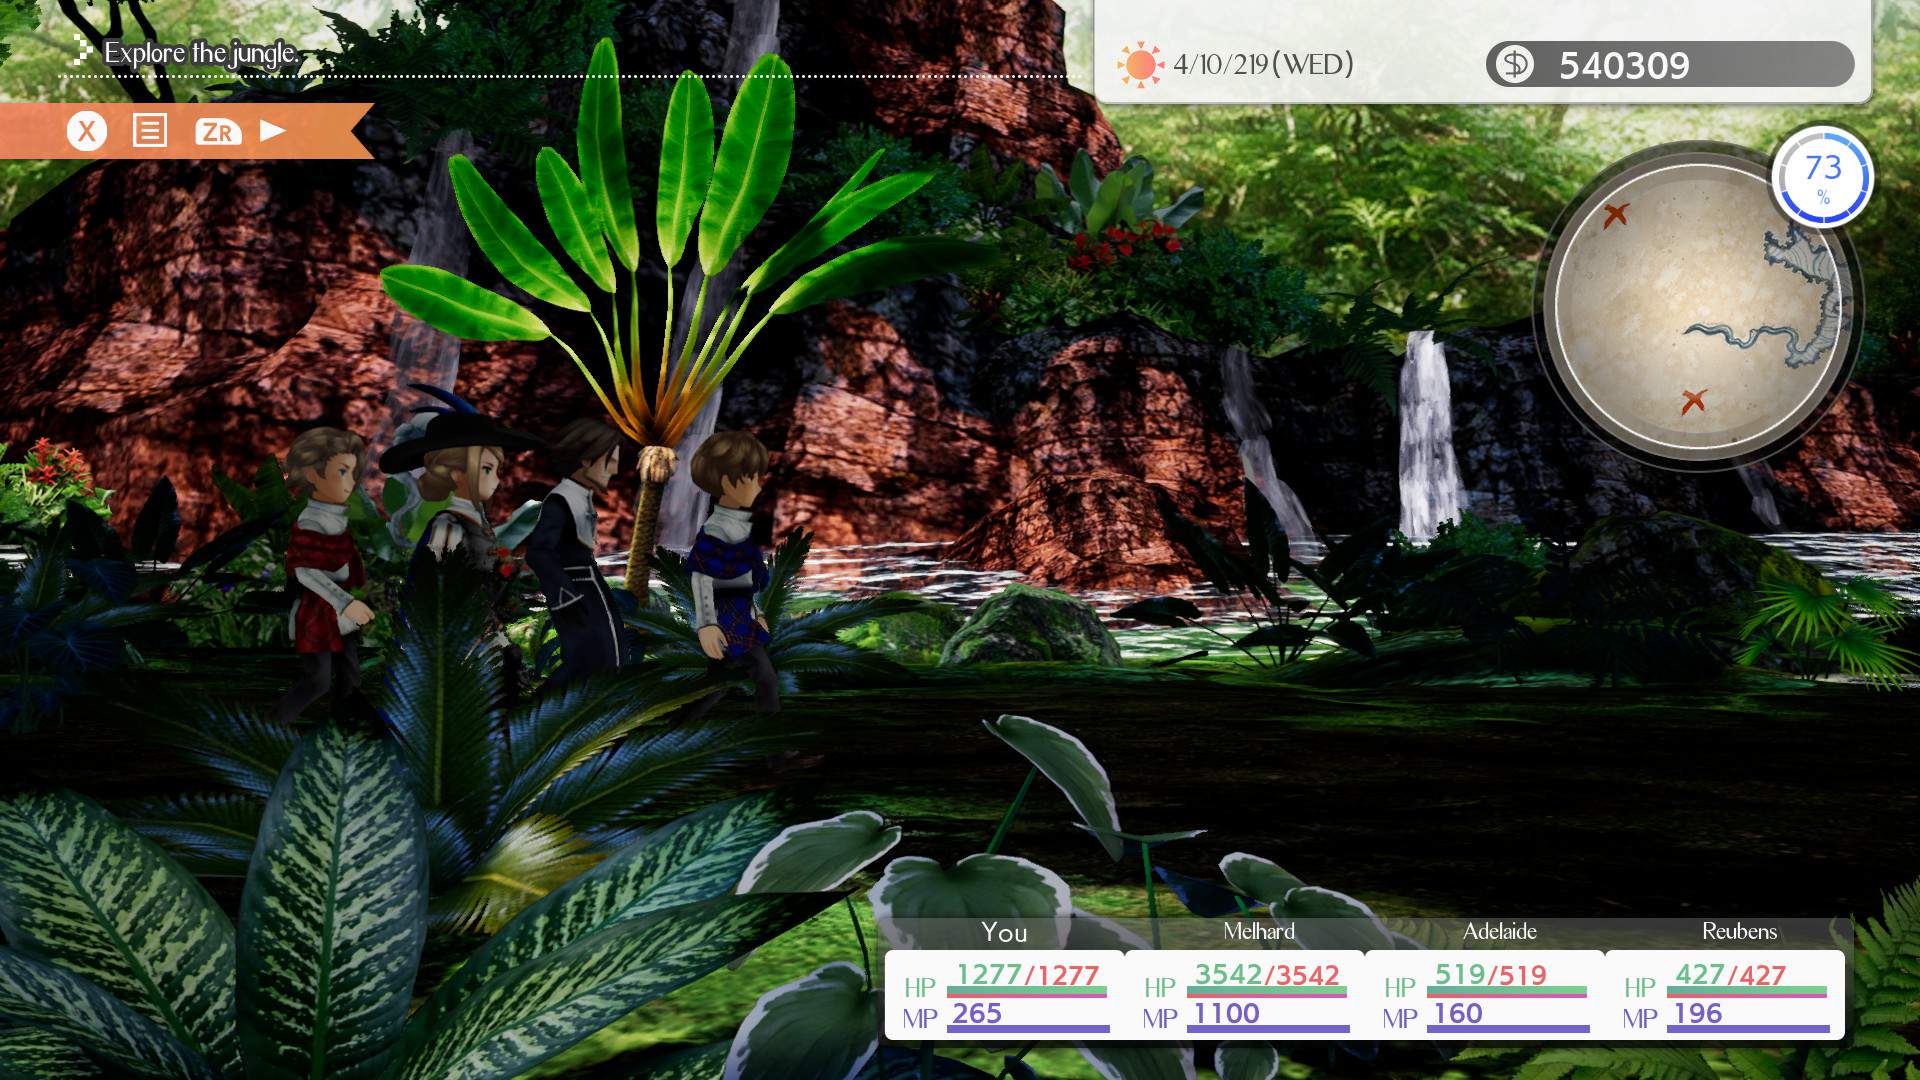 Gameplay-Screenshot einer Vierergruppe, die auf einer Expedition einen Dschungel erkundet.